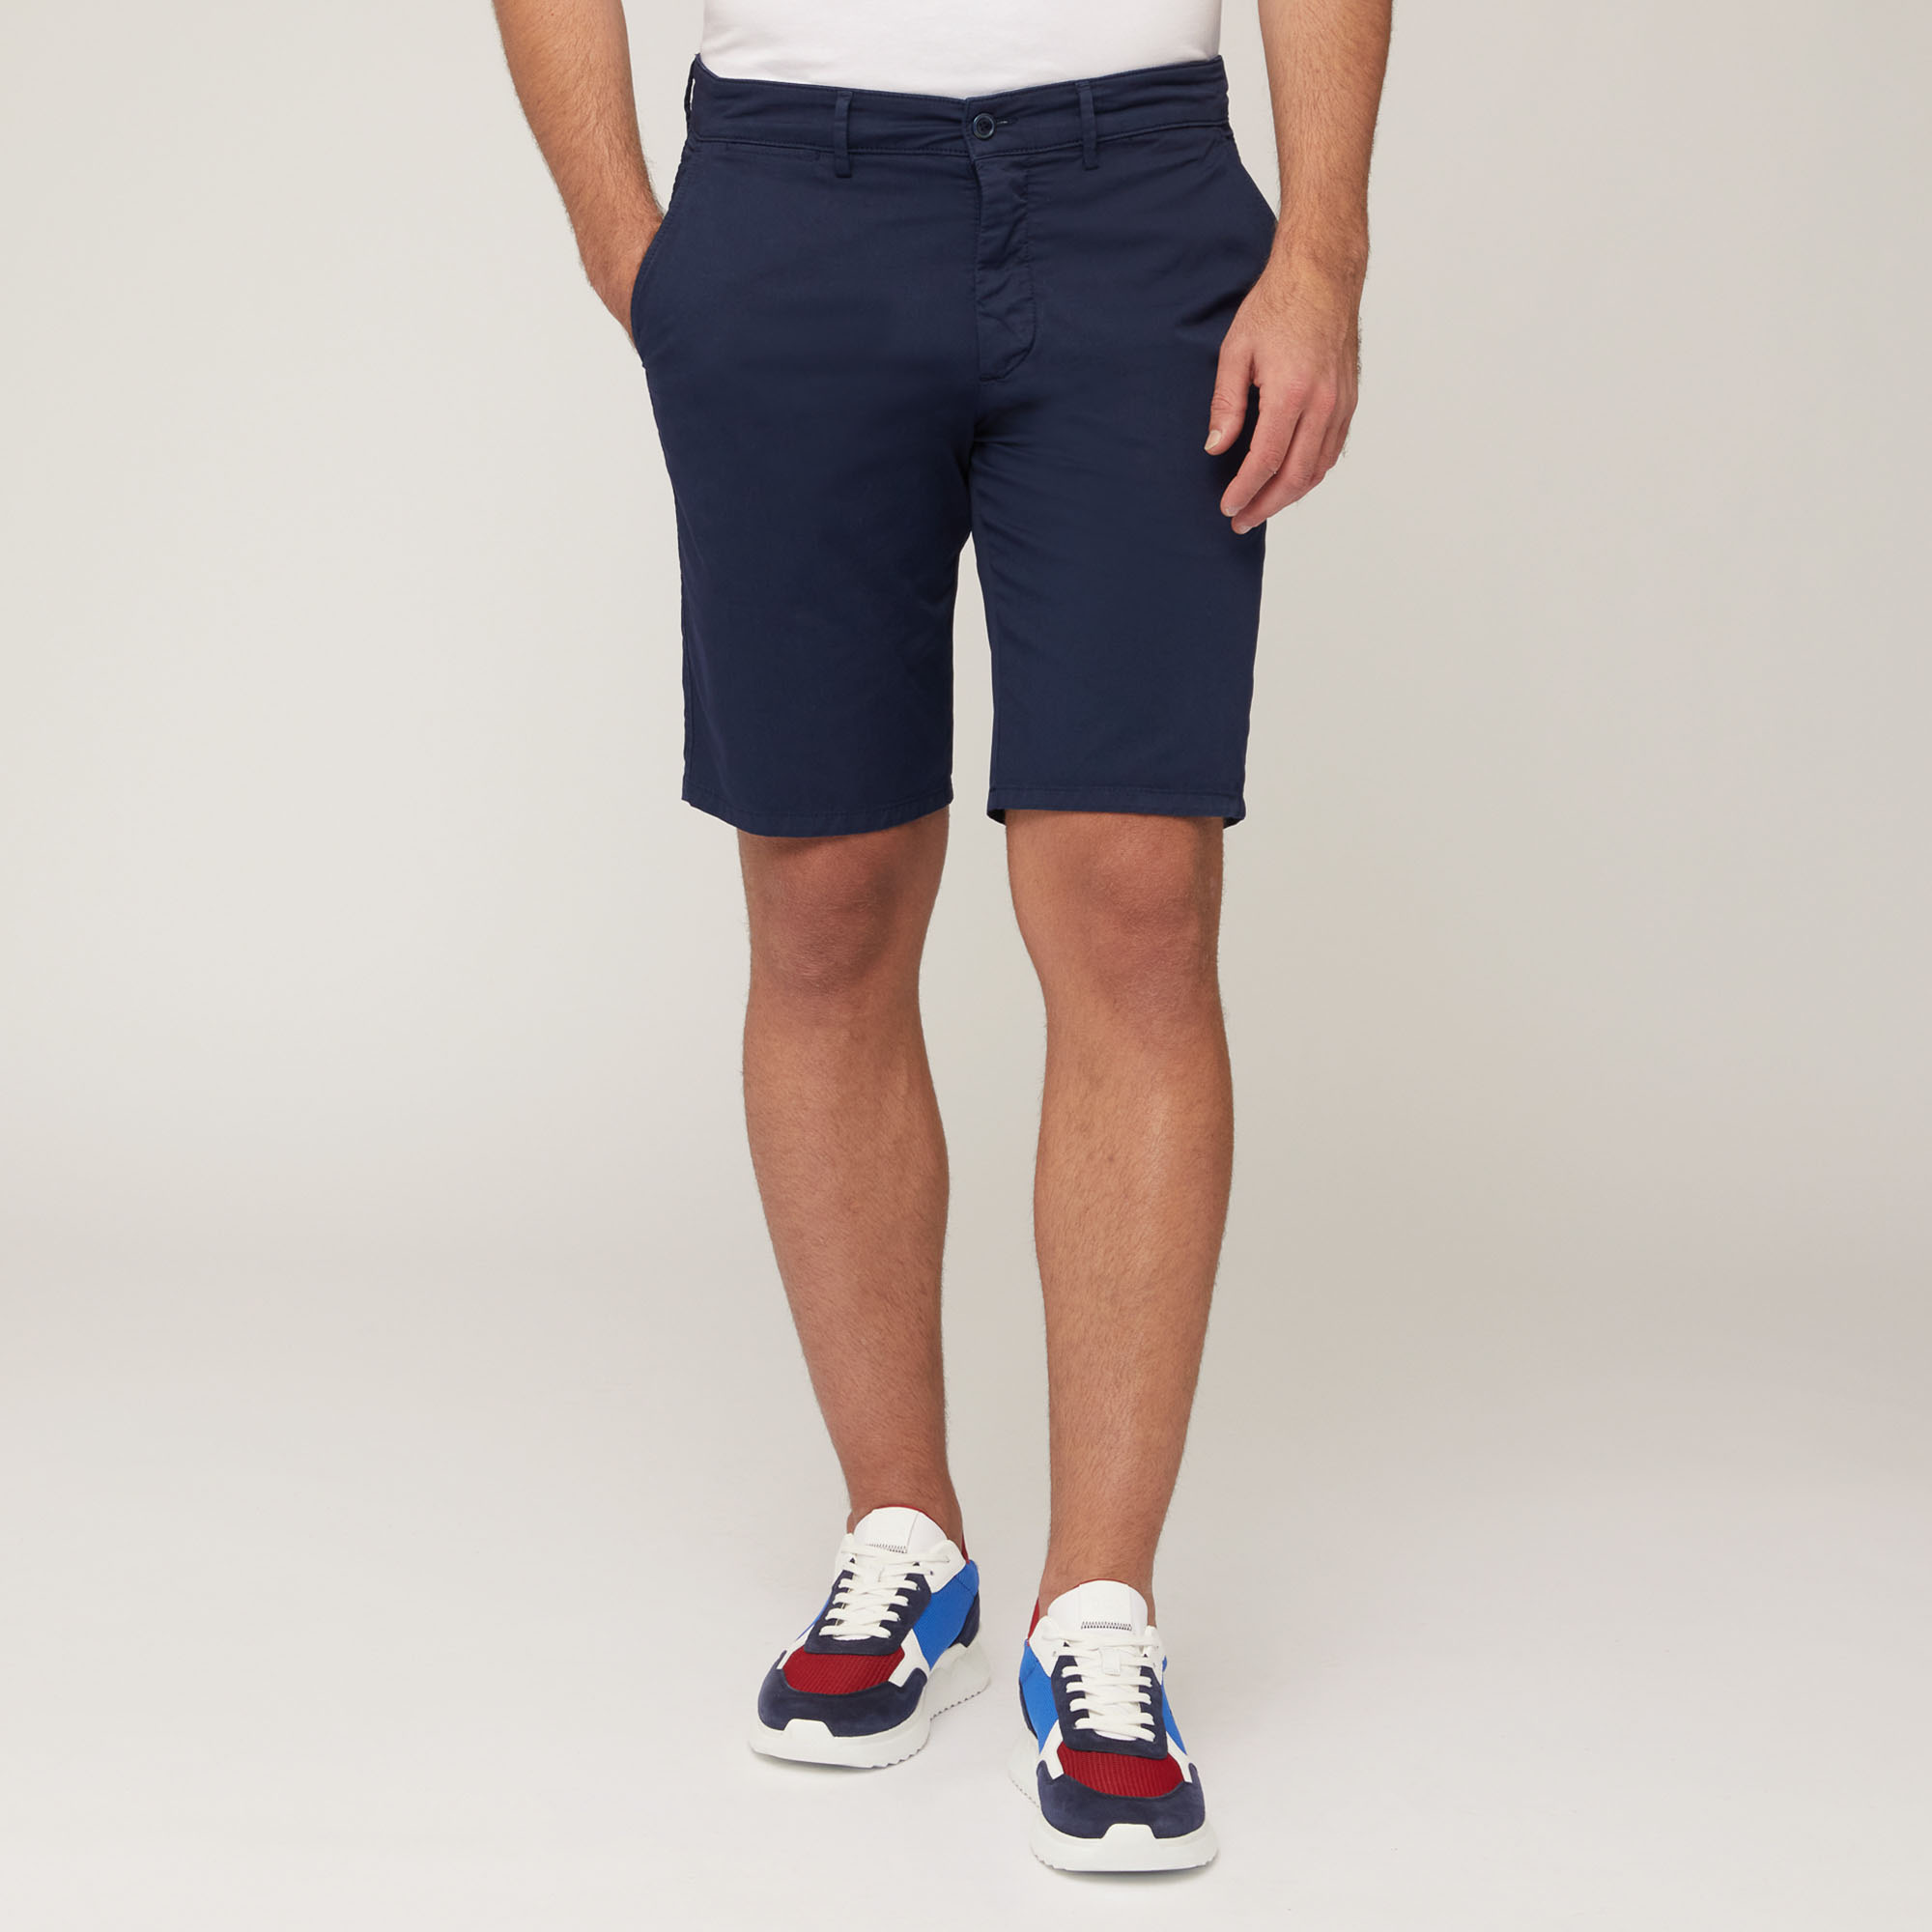 Regular Fit Bermuda Shorts, Blue, large image number 0